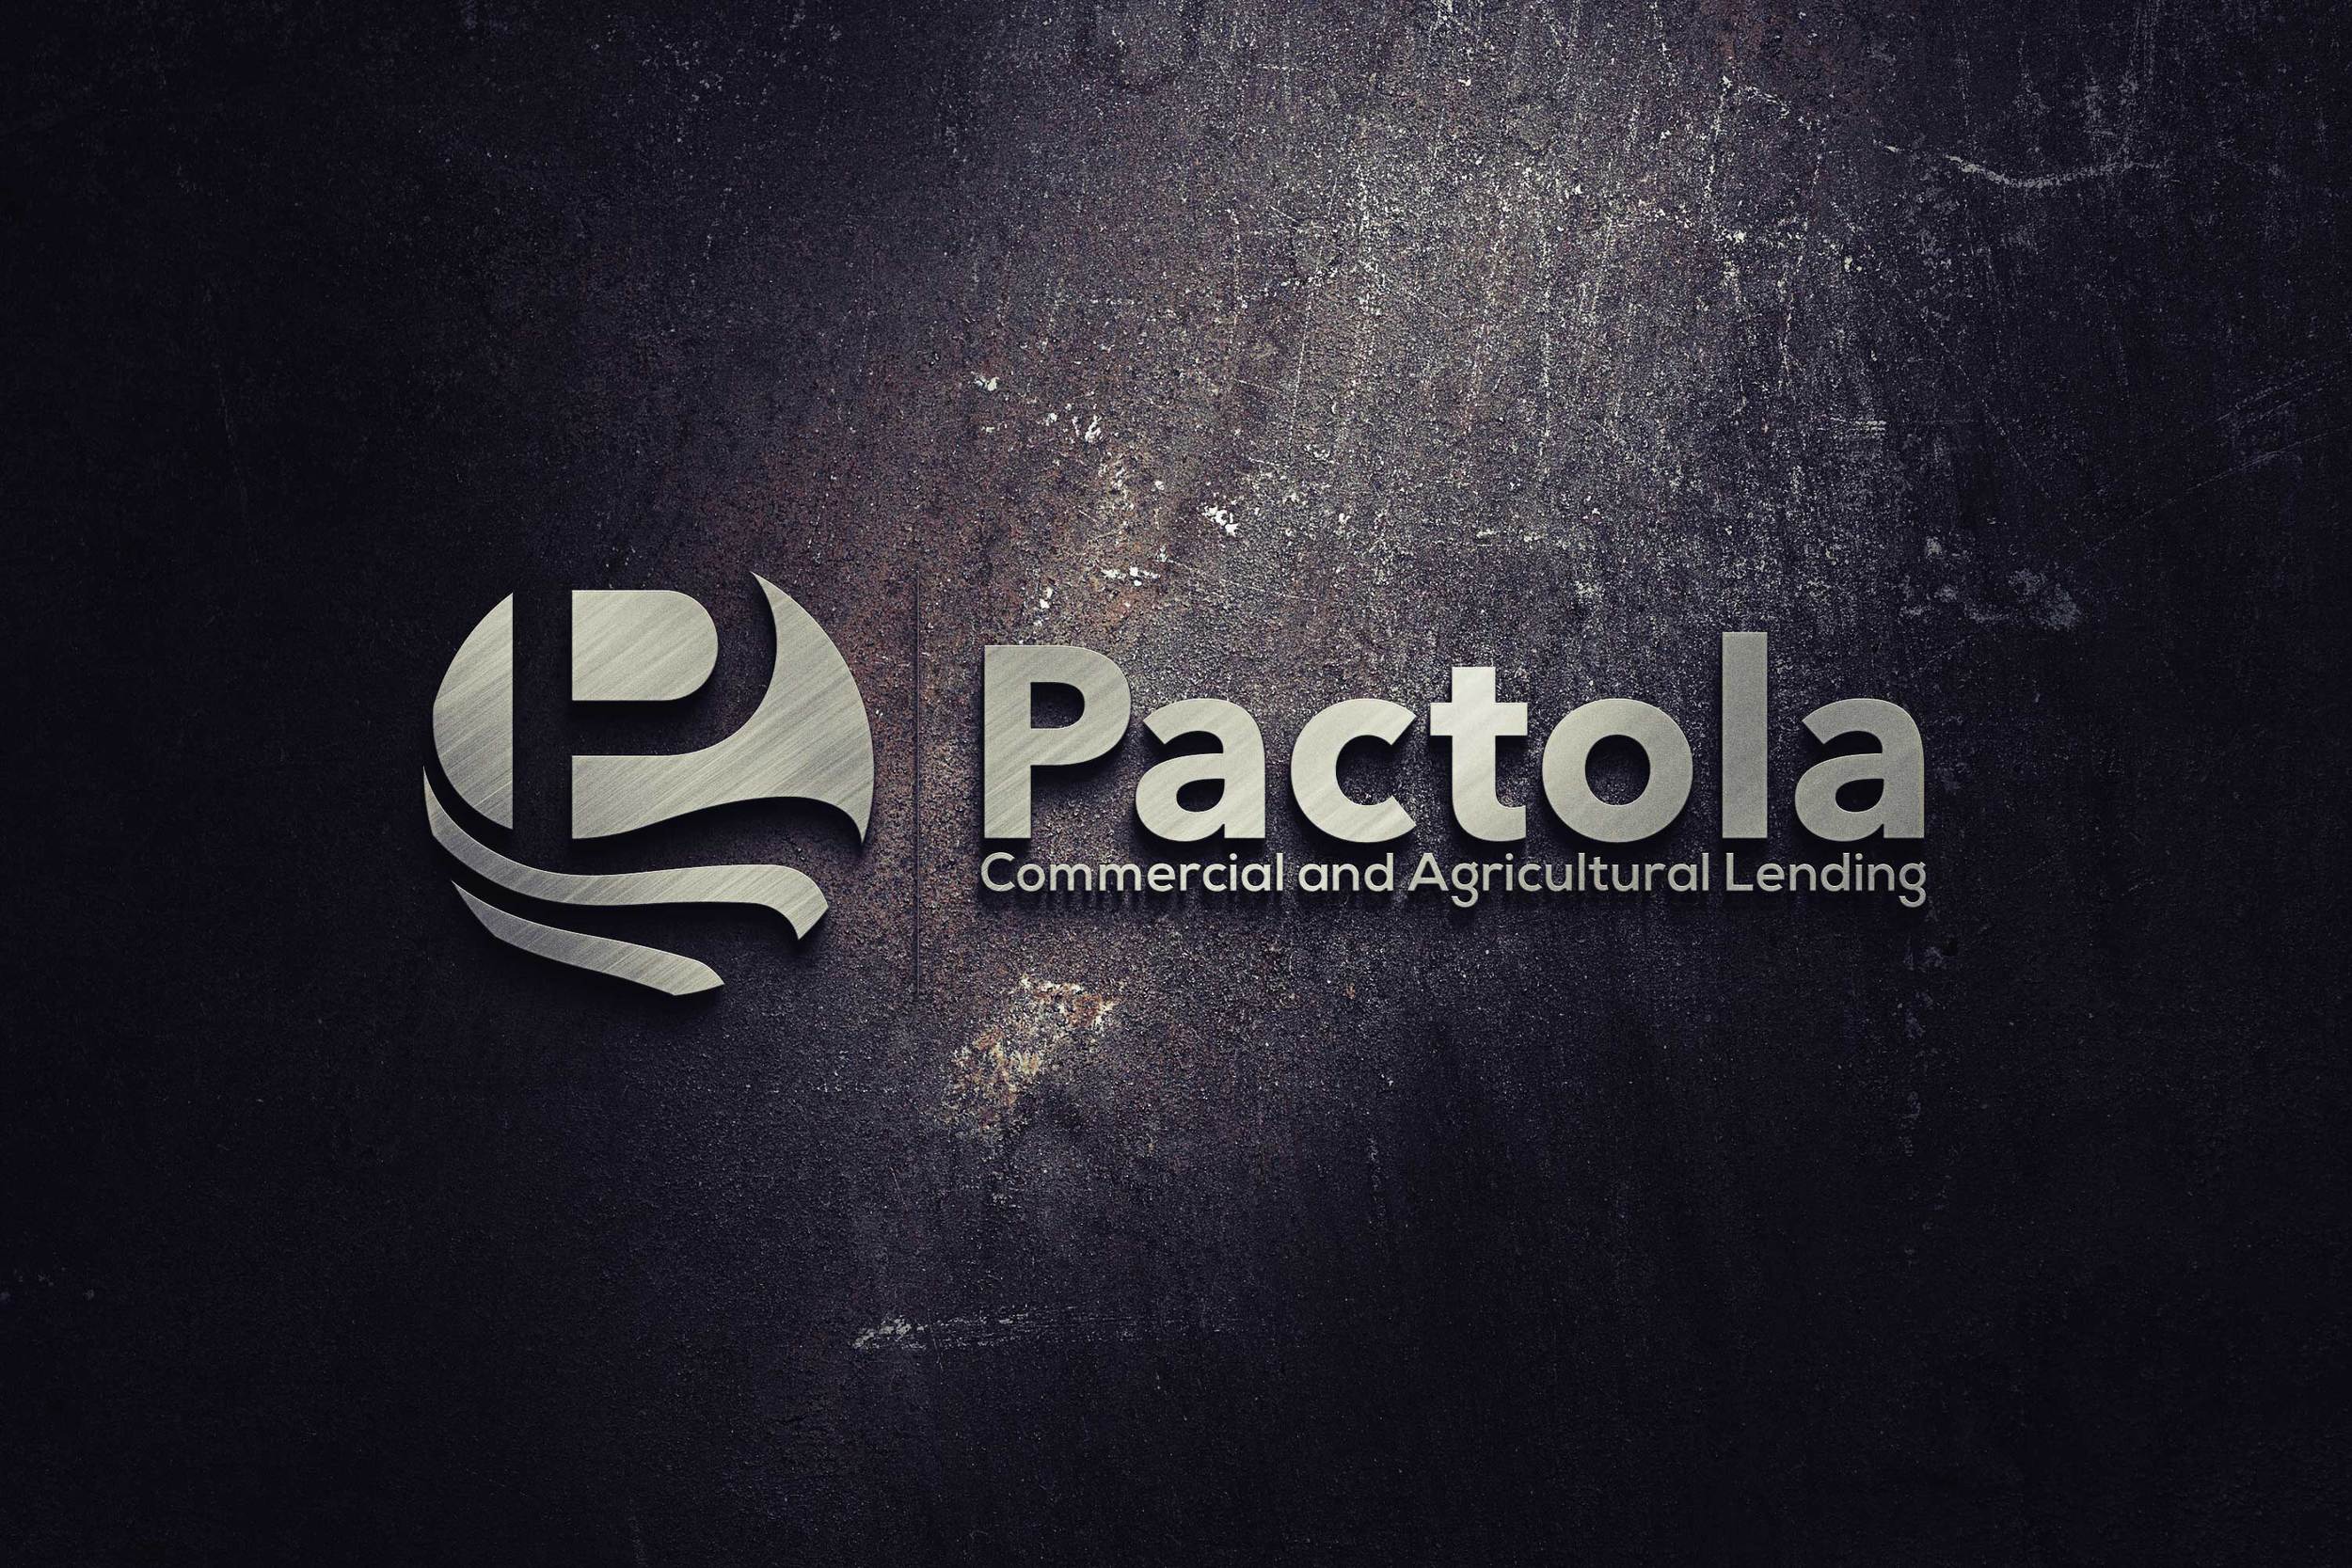 pactola logo large